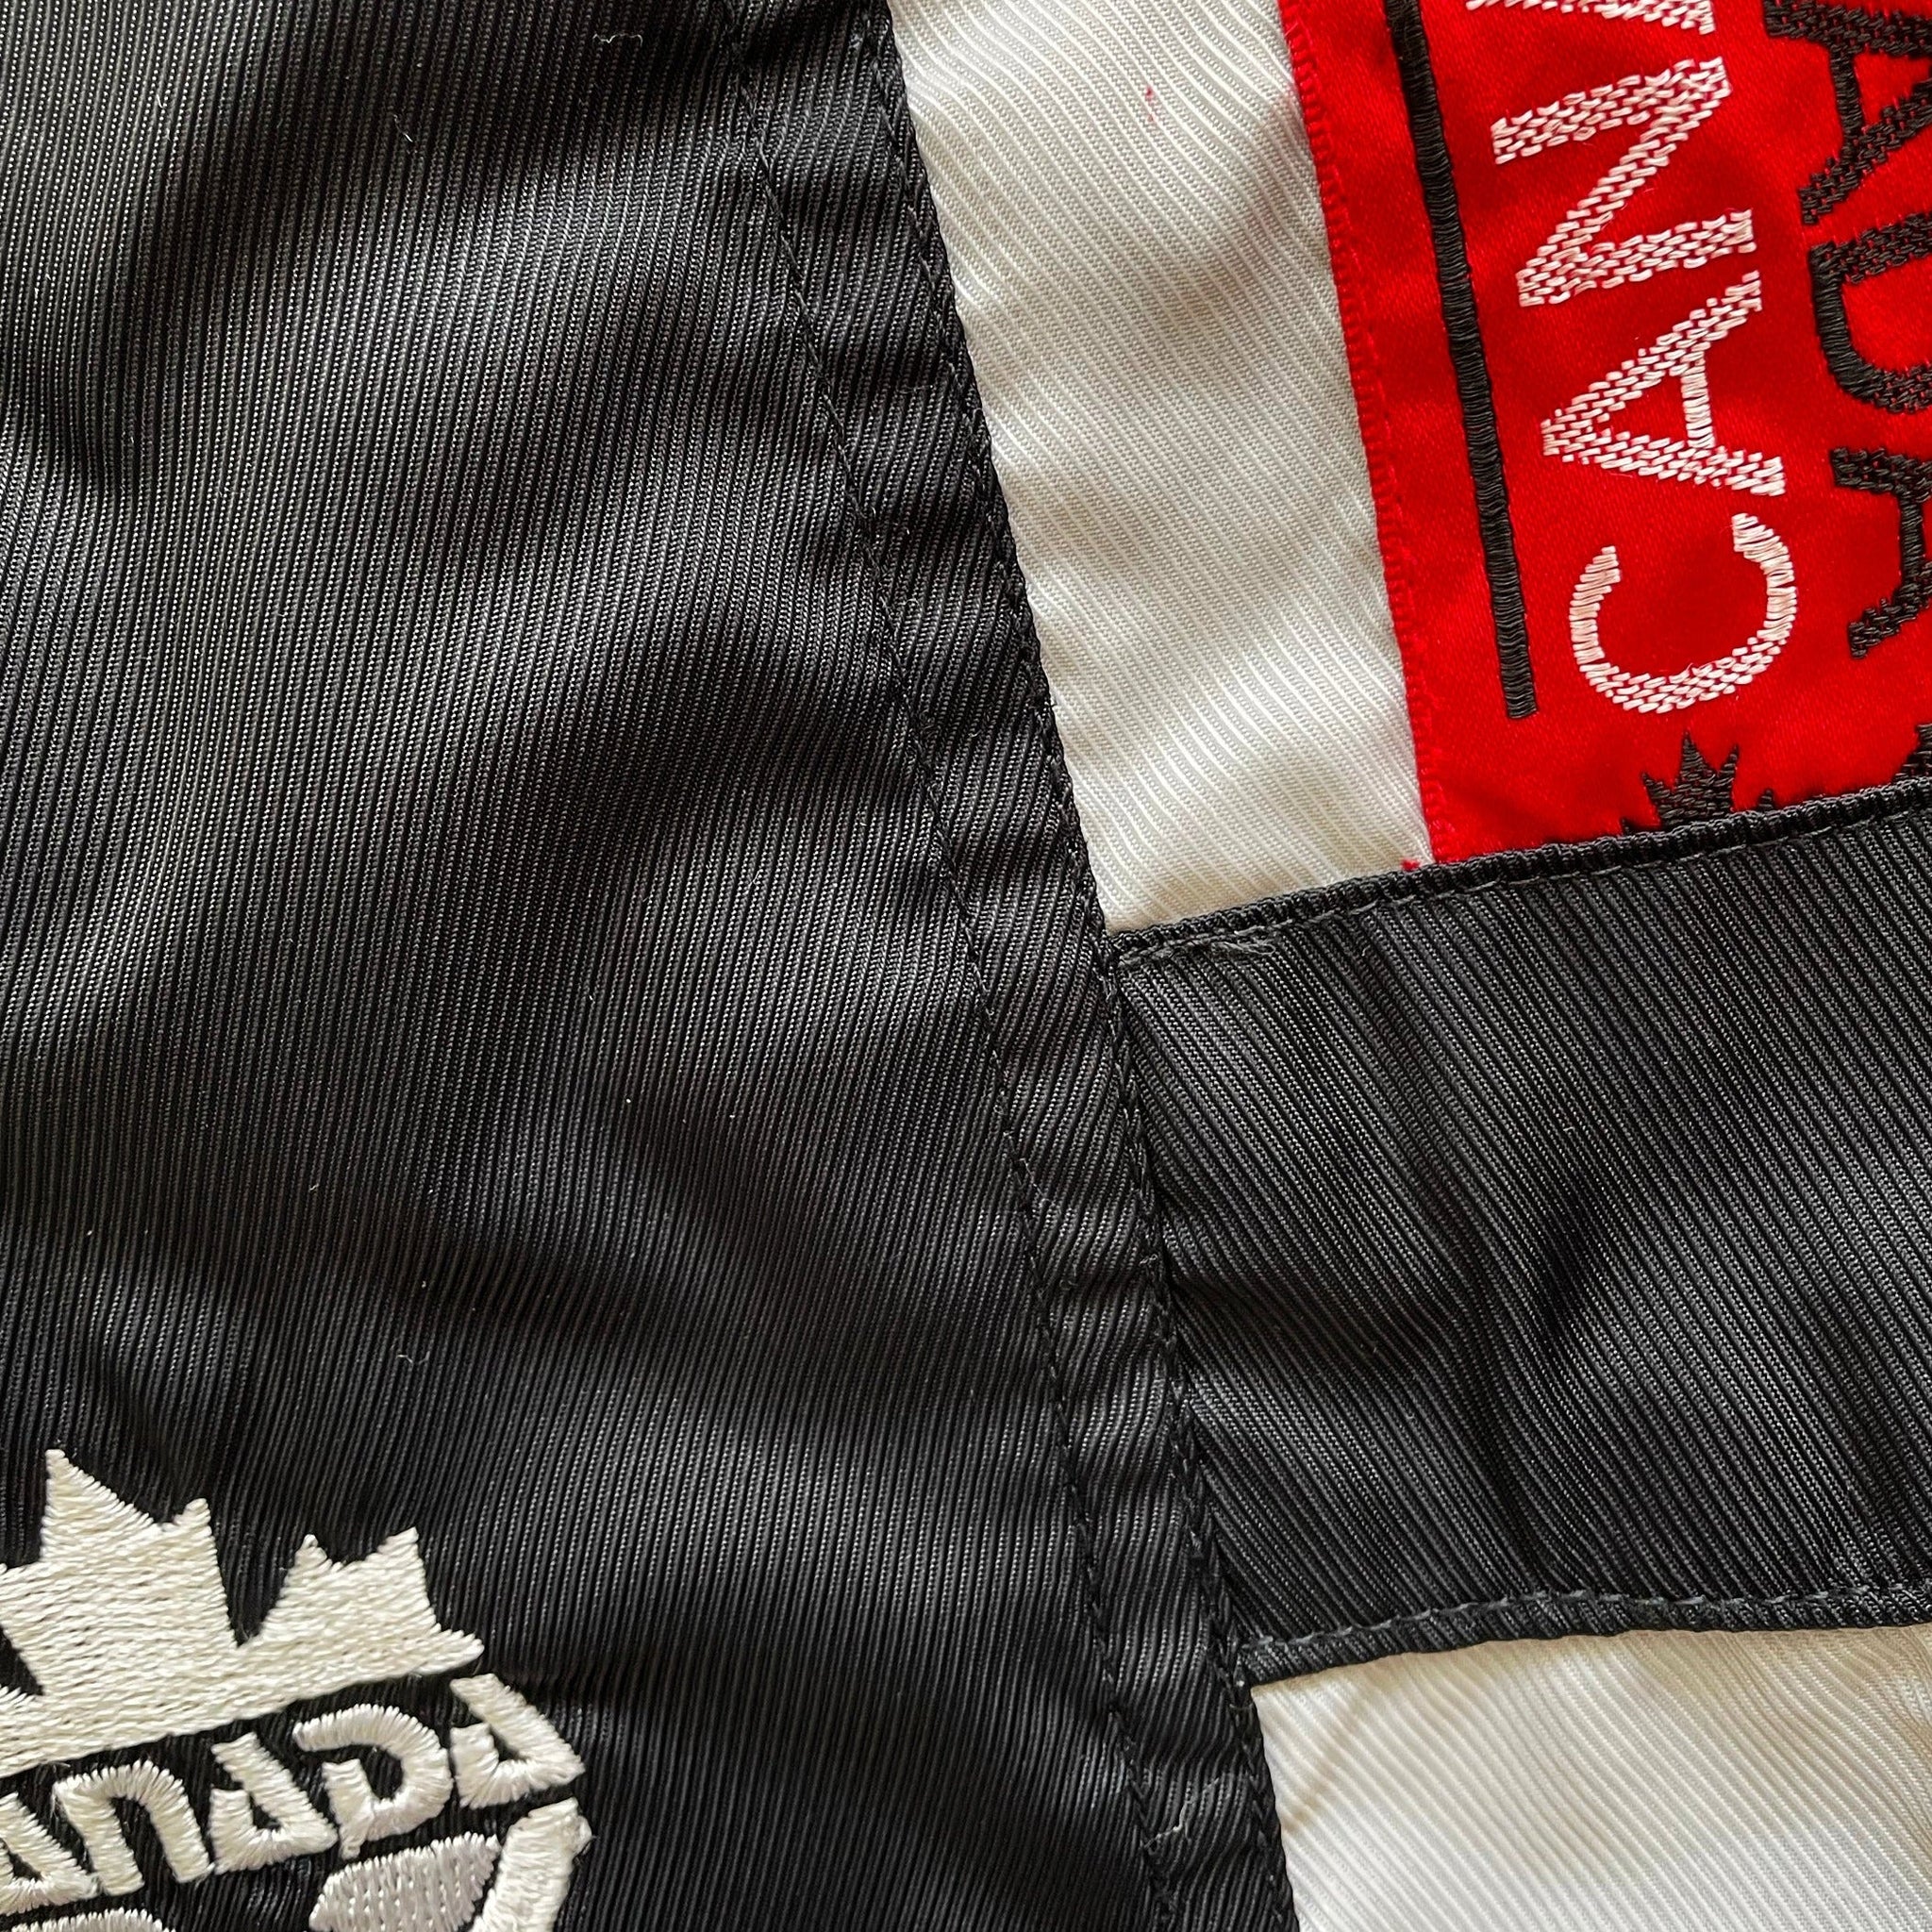 Canada Umbro Shorts - L